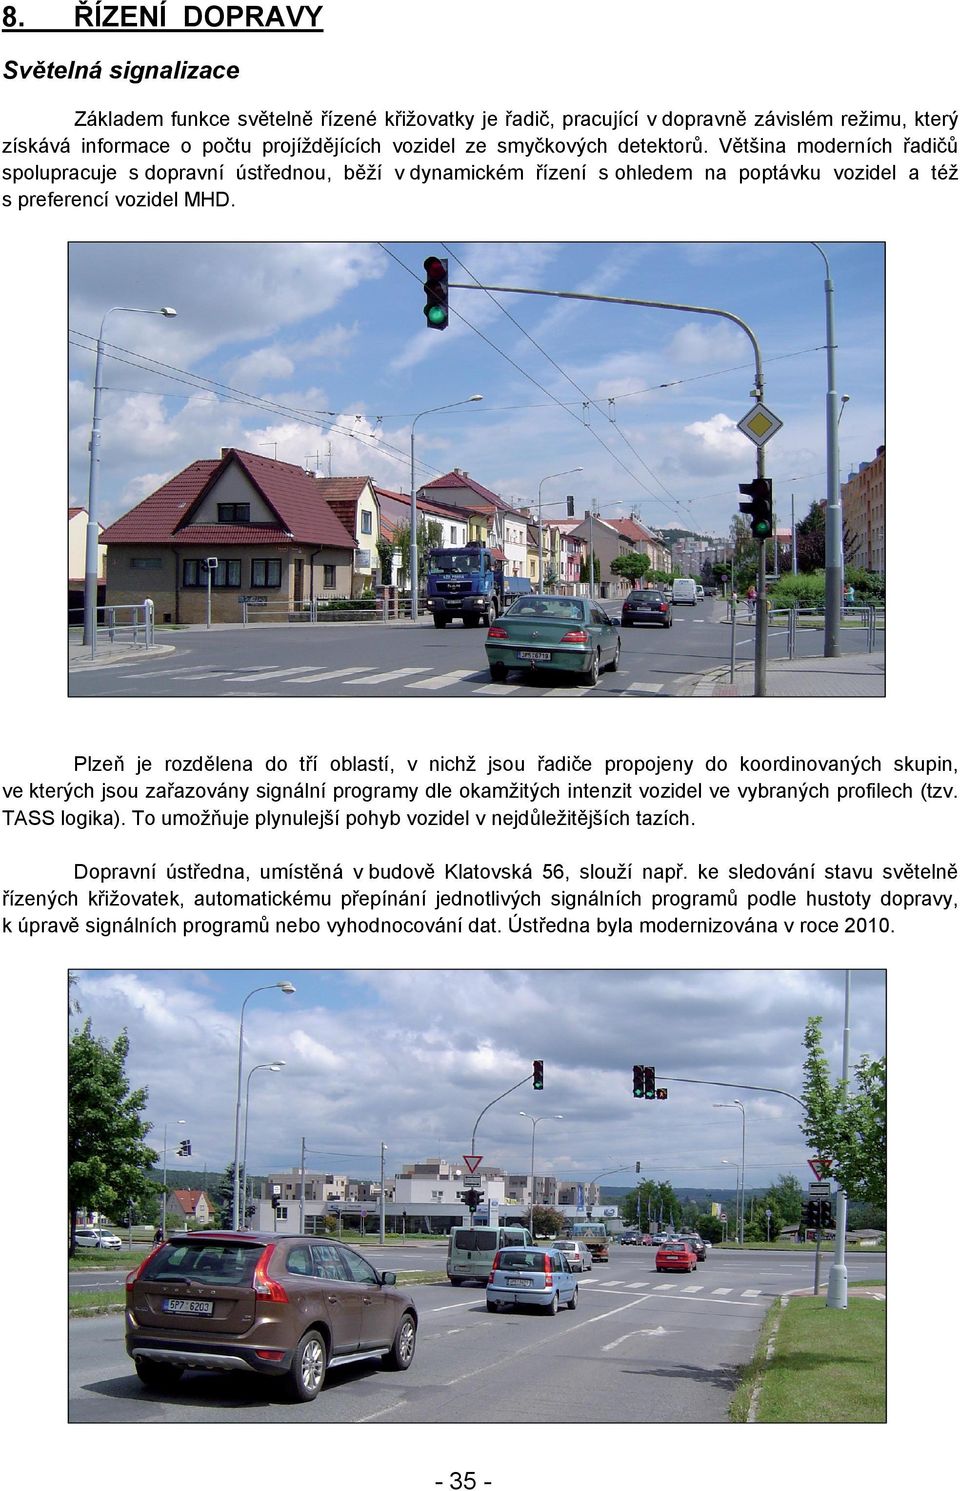 Plzeň je rozdělena do tří oblastí, v nichž jsou řadiče propojeny do koordinovaných skupin, ve kterých jsou zařazovány signální programy dle okamžitých intenzit vozidel ve vybraných profilech (tzv.